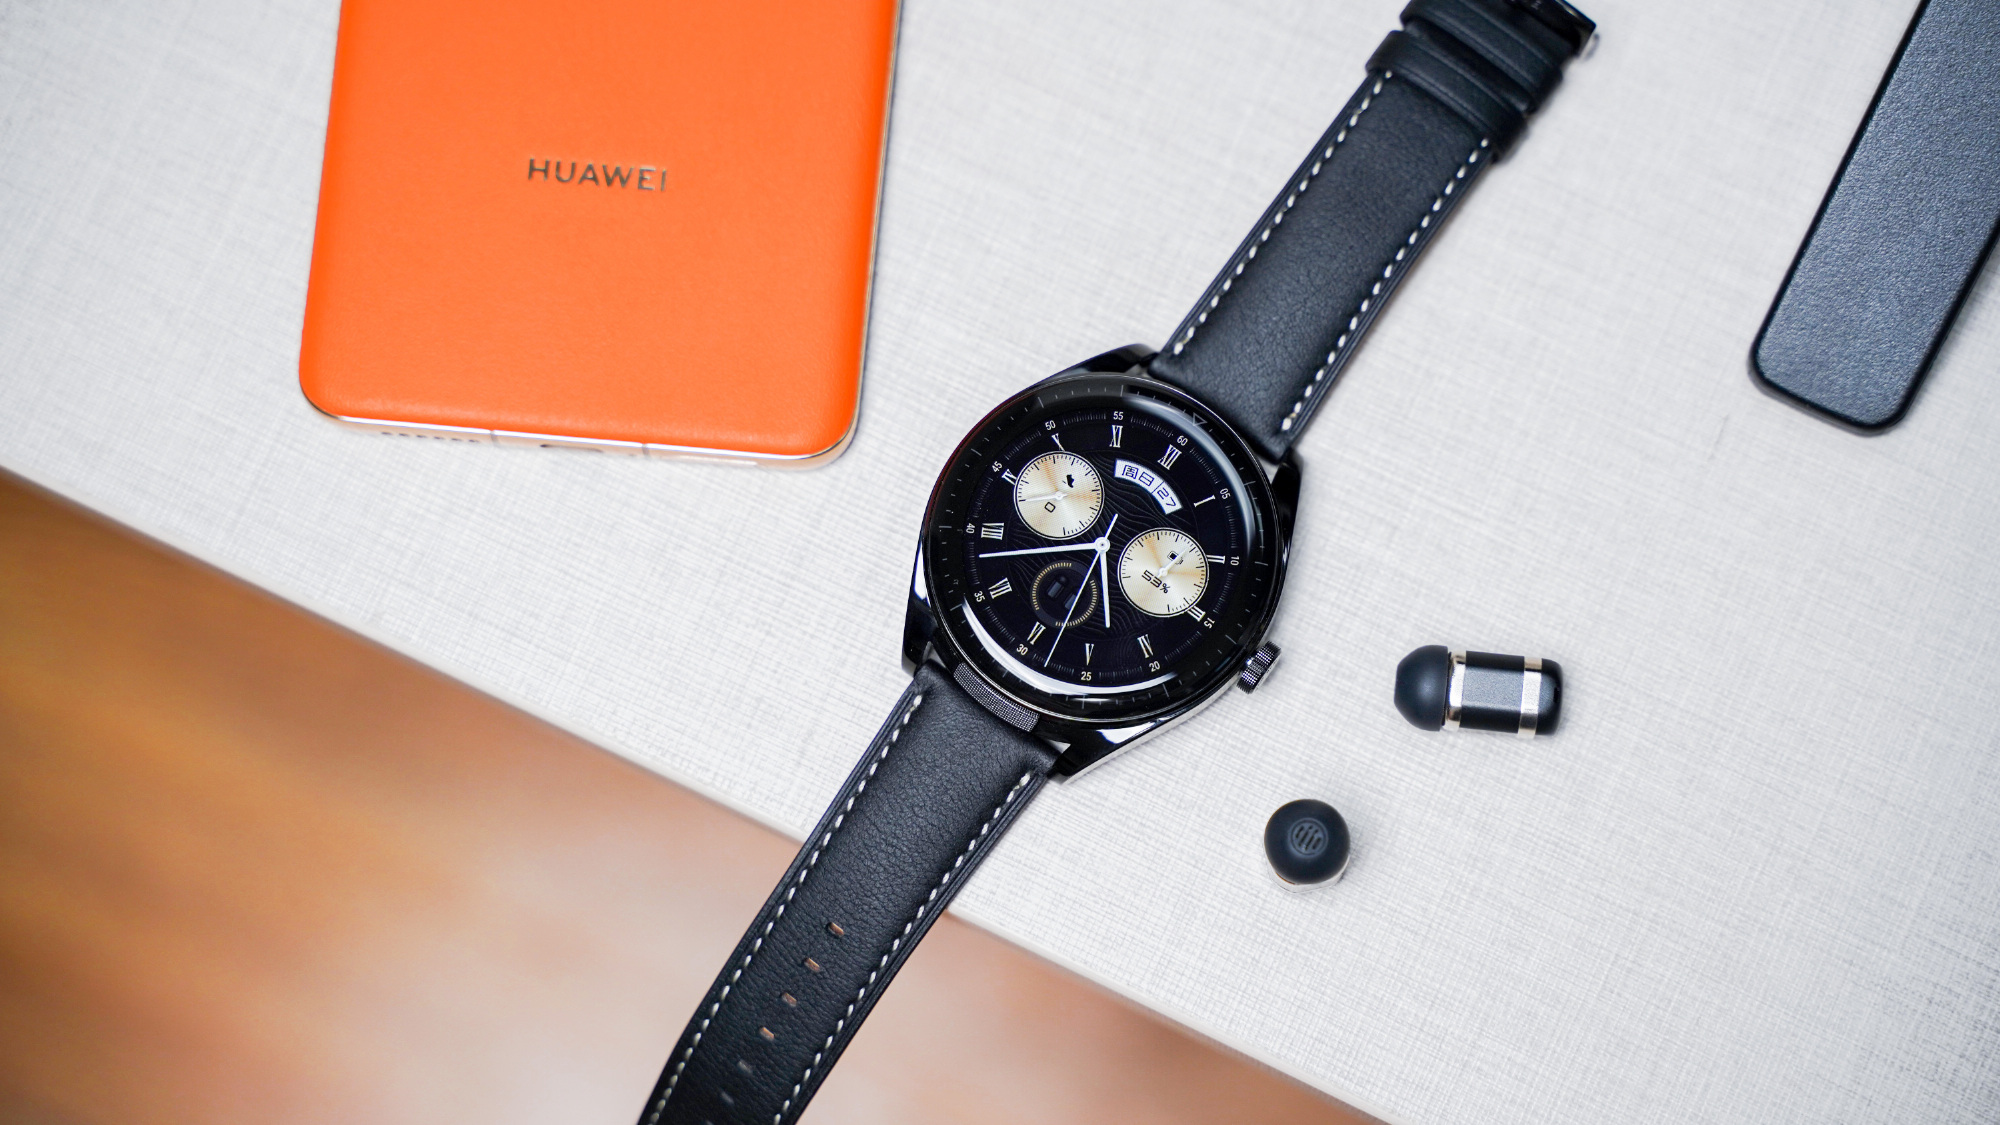 Huawei ra mắt smartwatch kiêm tai nghe không dây, giá 10,1 triệu đồng - Ảnh 1.